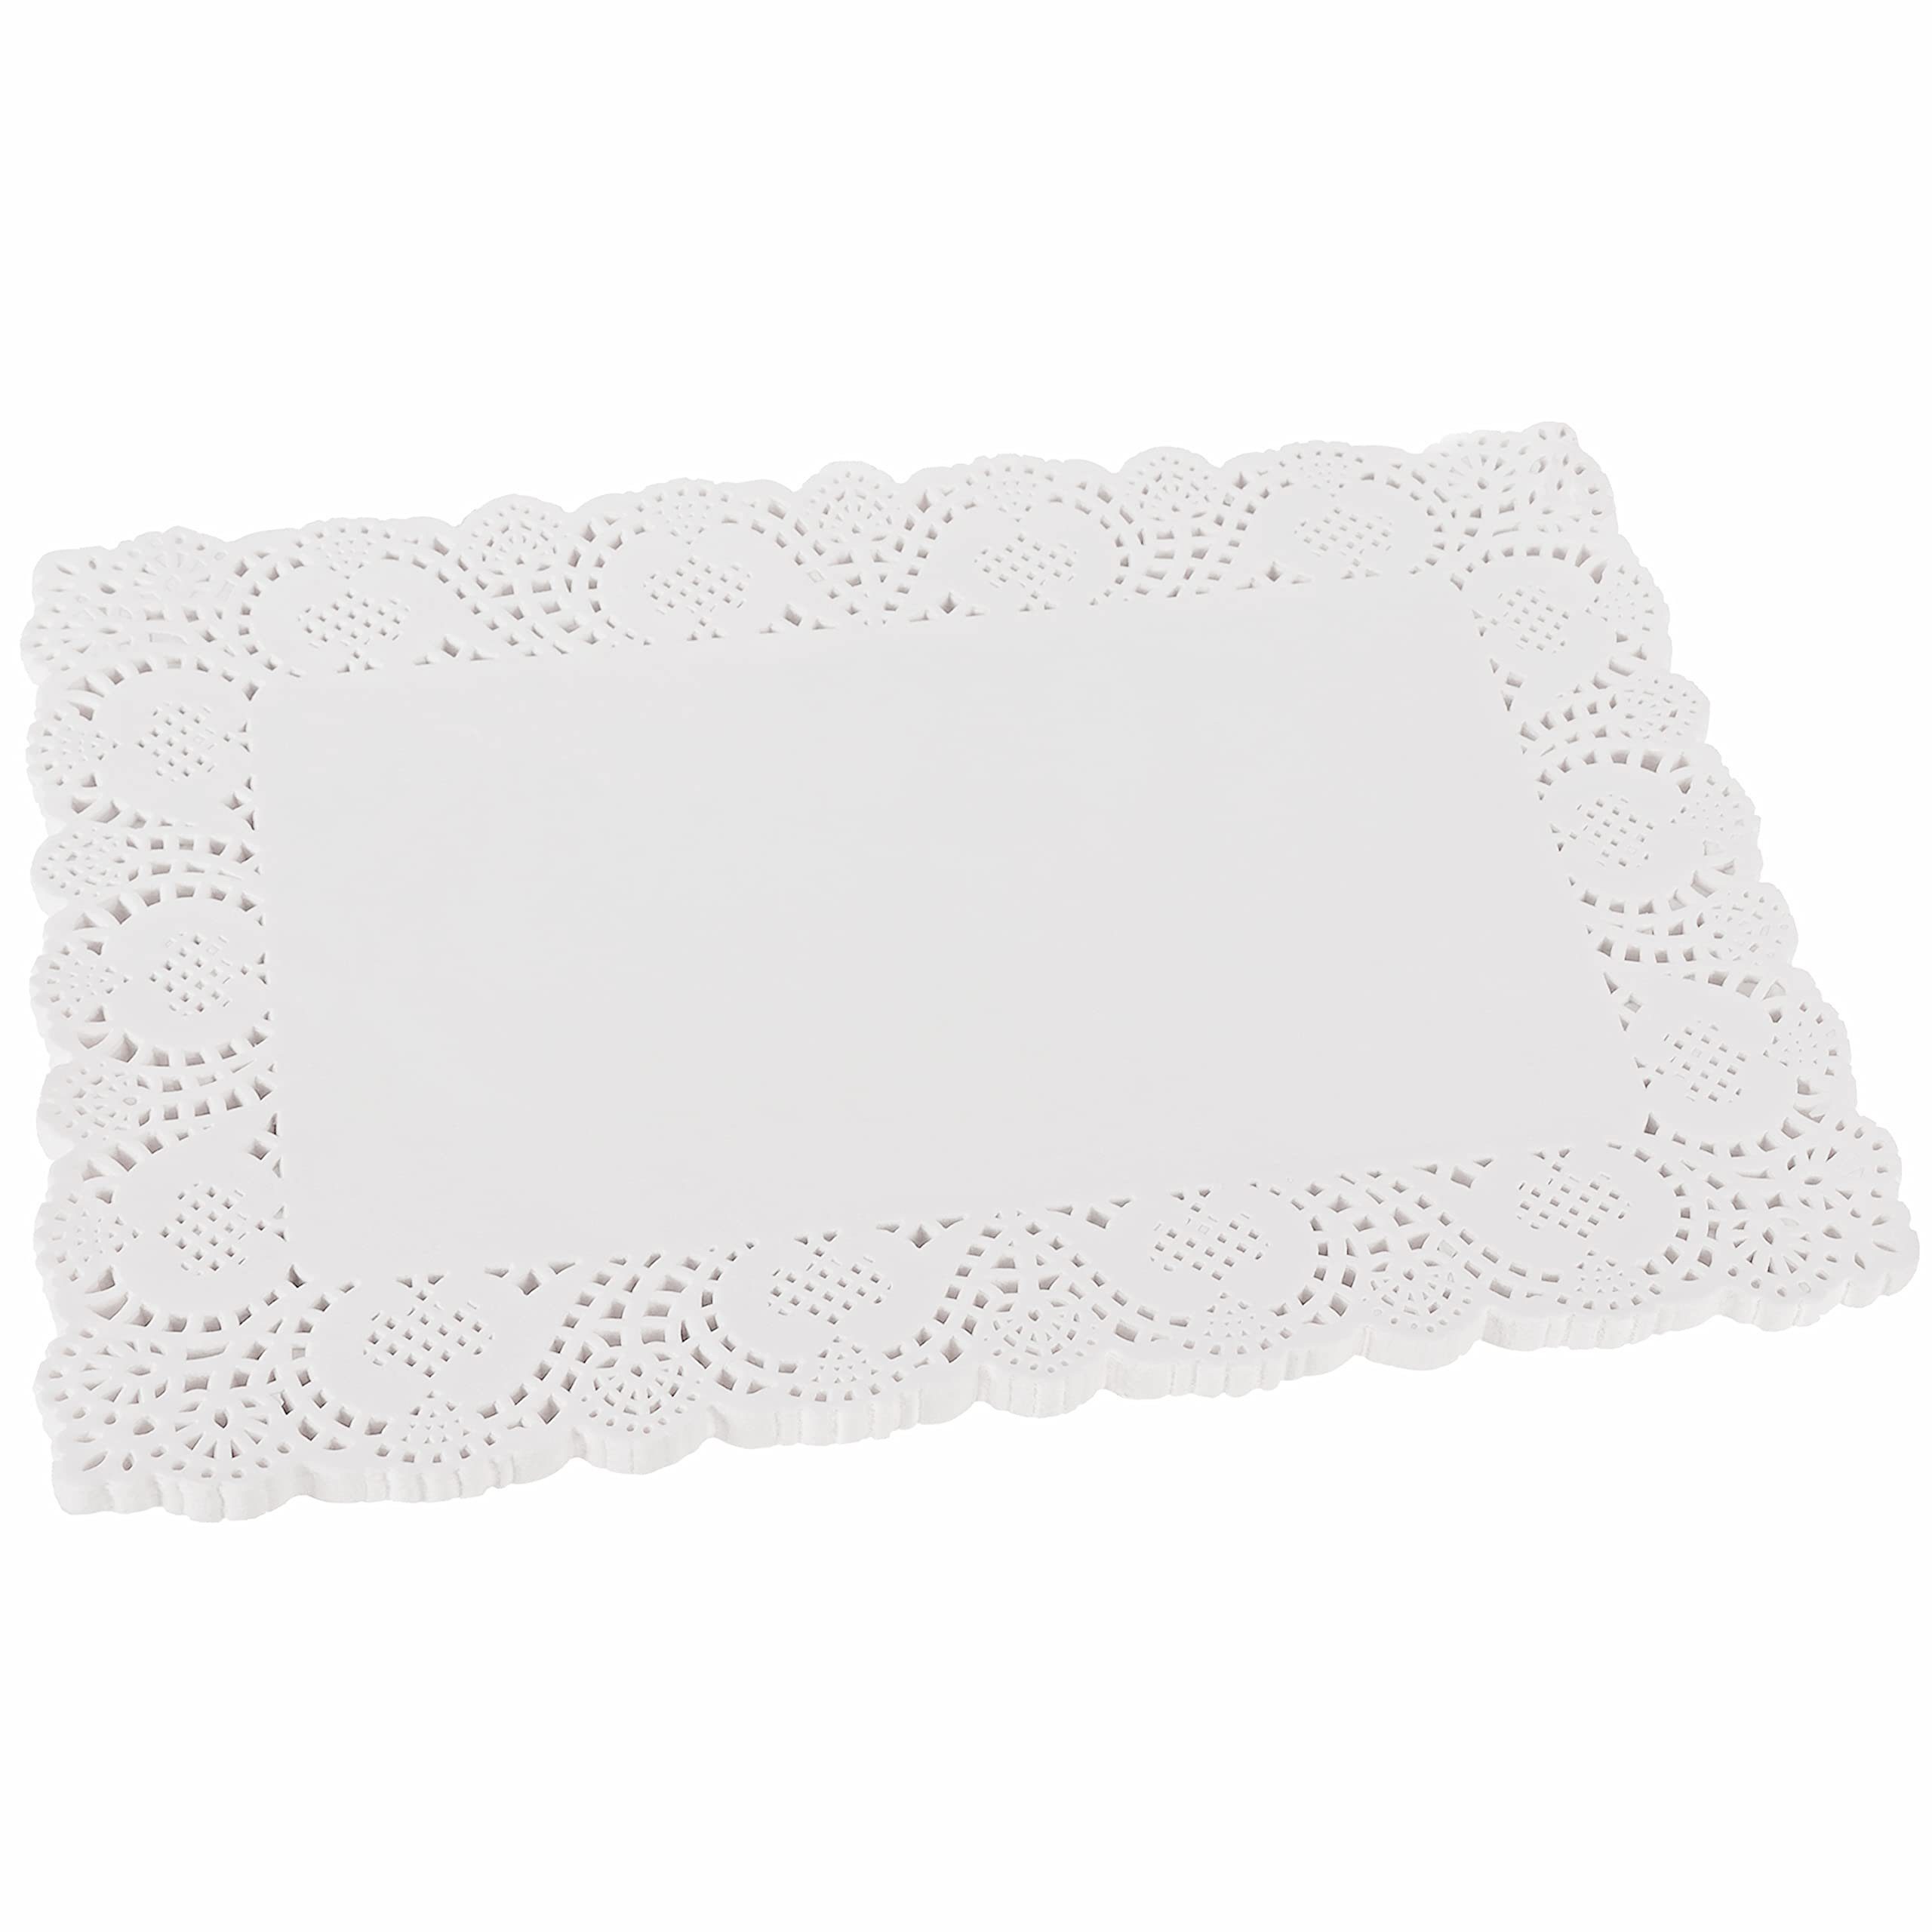 Belle Vous Aquarellpapier White Lace Paper Cake Base 100pcs 36.5x26cm Wedding Cake Decor, White Lace Paper Cake Base 100pcs 36.5x26cm Wedding Cake Decoration